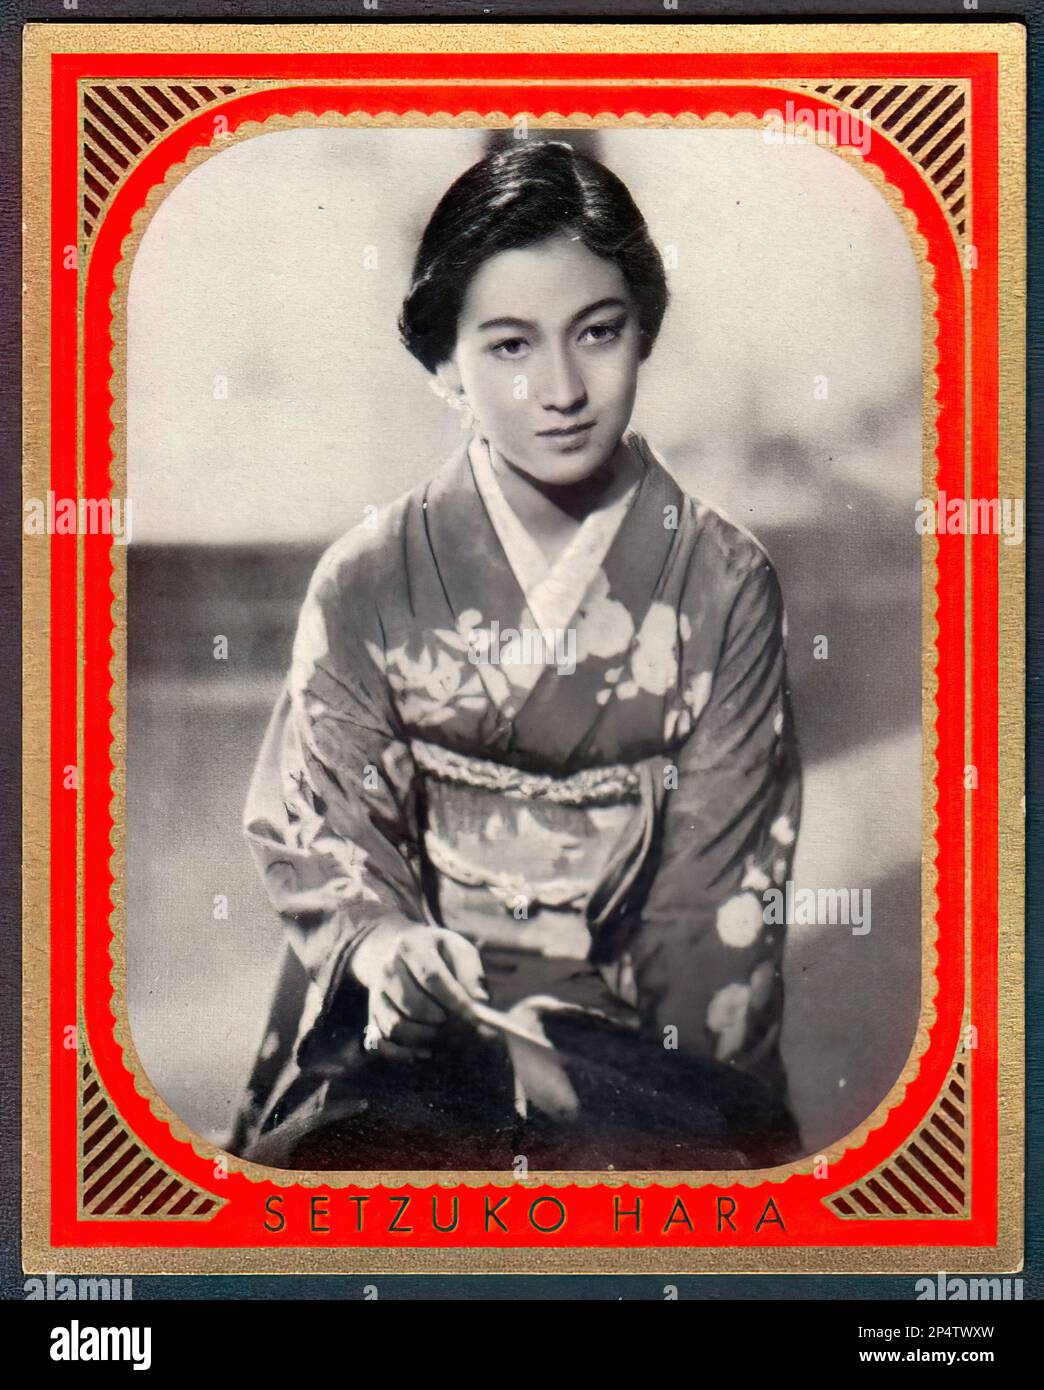 Portrait de Setsuko Hara - carte à cigarettes allemande ancienne Banque D'Images